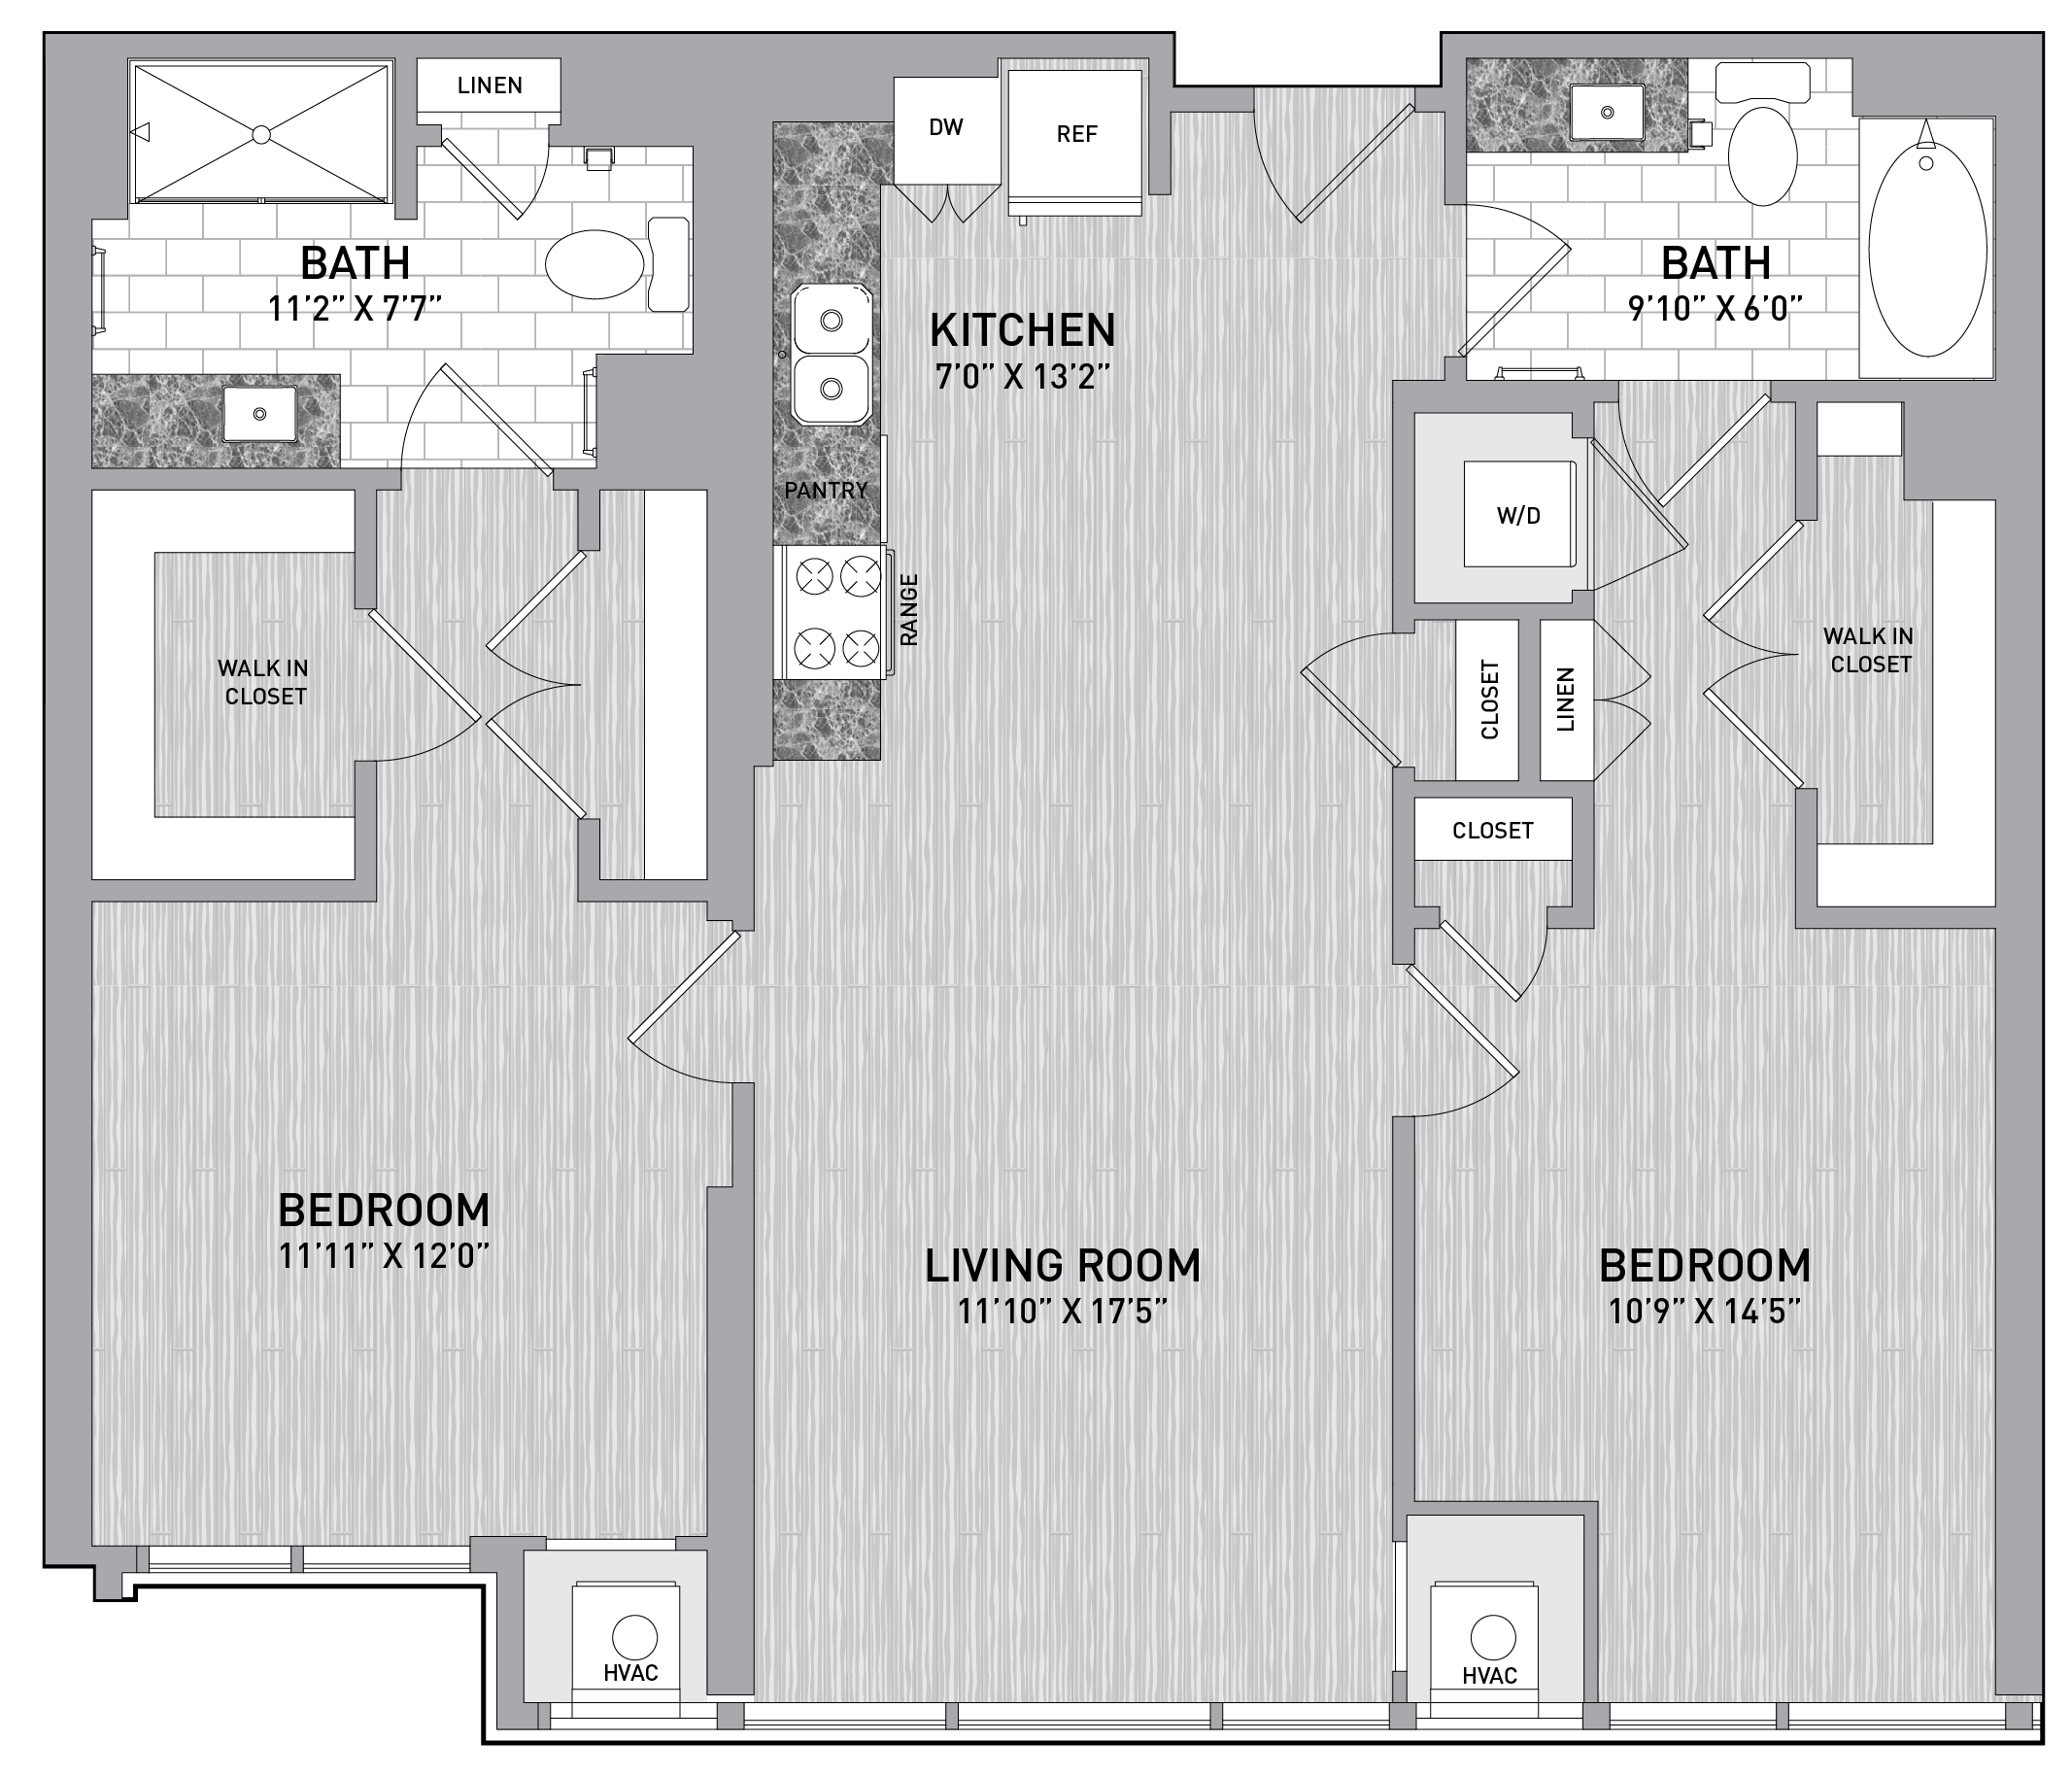 floorplan image of unit id 0918